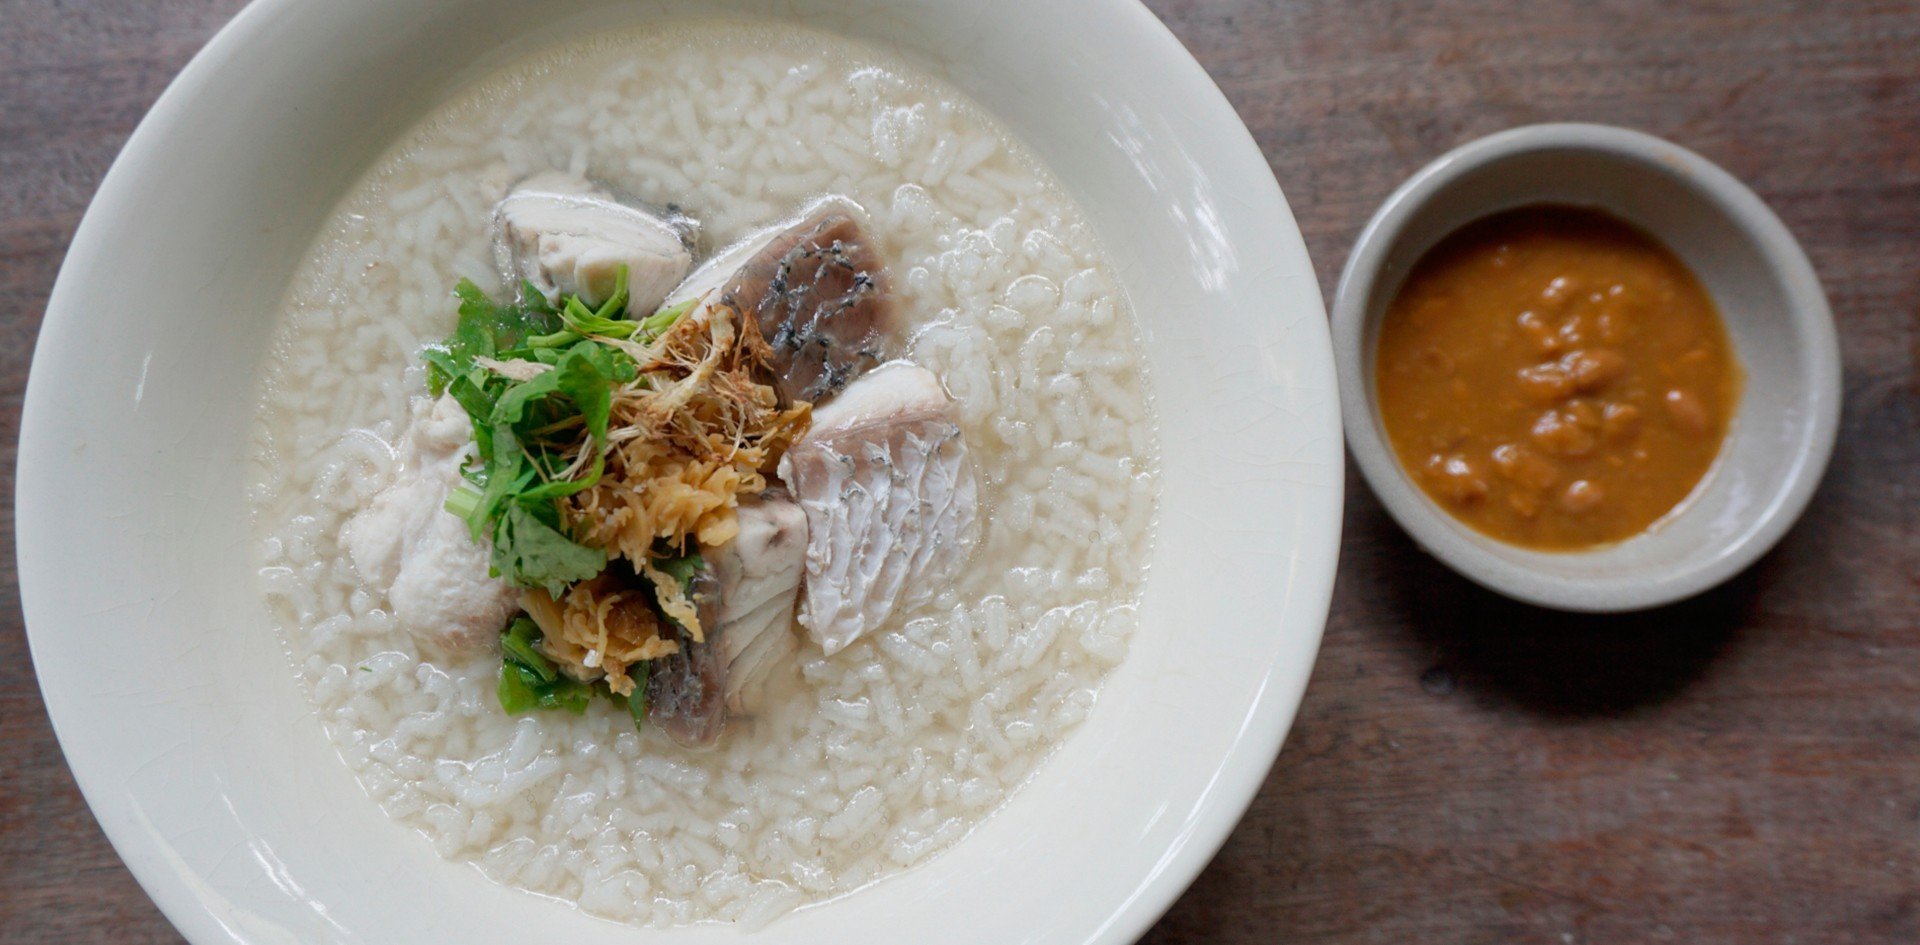 วิธีทำ เมนู “ข้าวต้มปลากะพง” เมนูอาหารเช้าแสนอร่อย ทำง่ายแถมอยู่ท้อง!